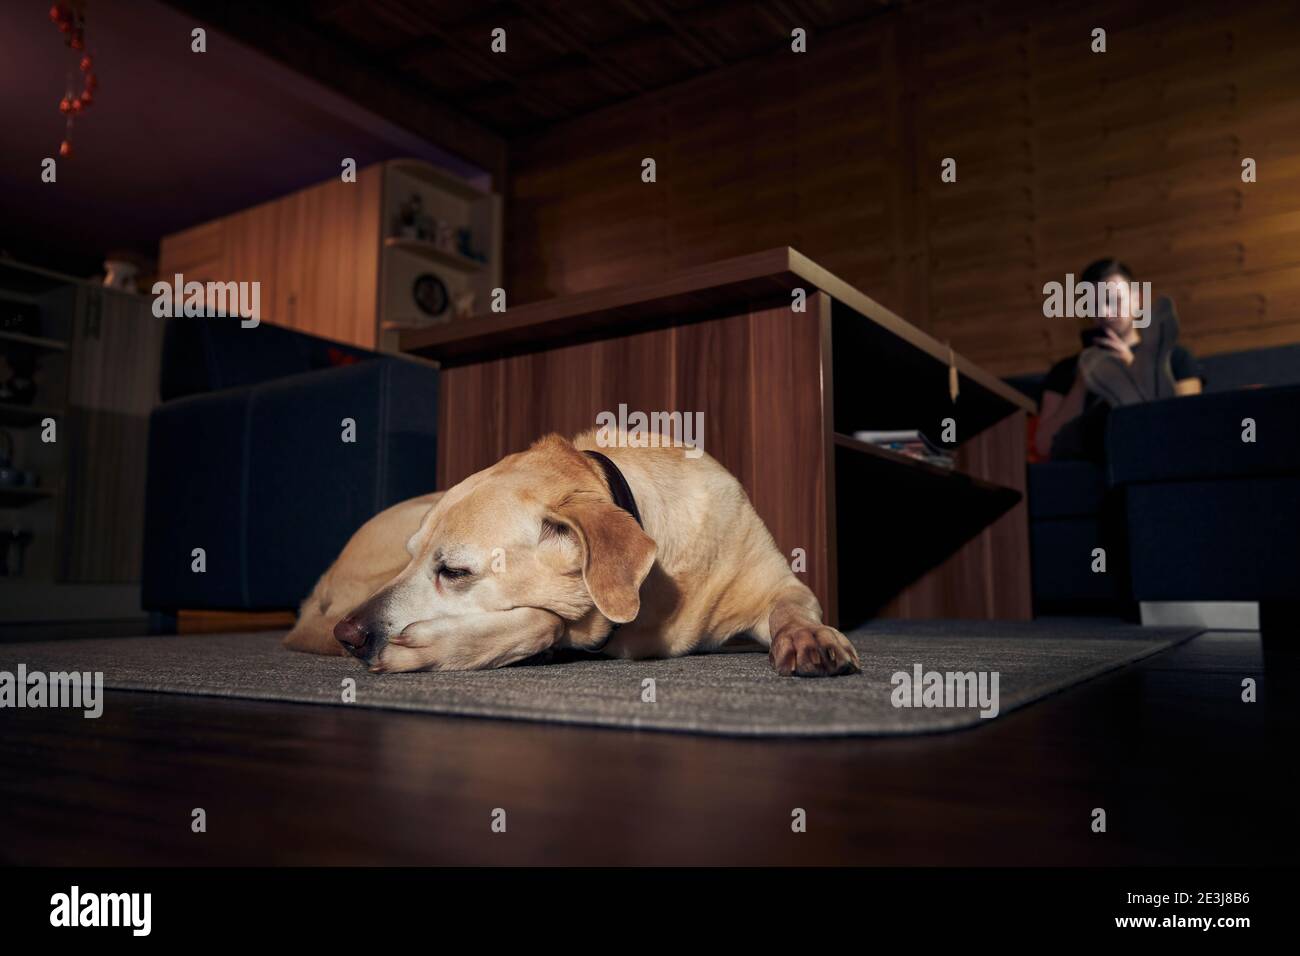 Häusliches Leben mit Hund. Netter labrador Retriever, der auf dem Teppich schläft, gegen den Mann, der sich auf dem Sofa ausruht und das Telefon benutzt. Stockfoto